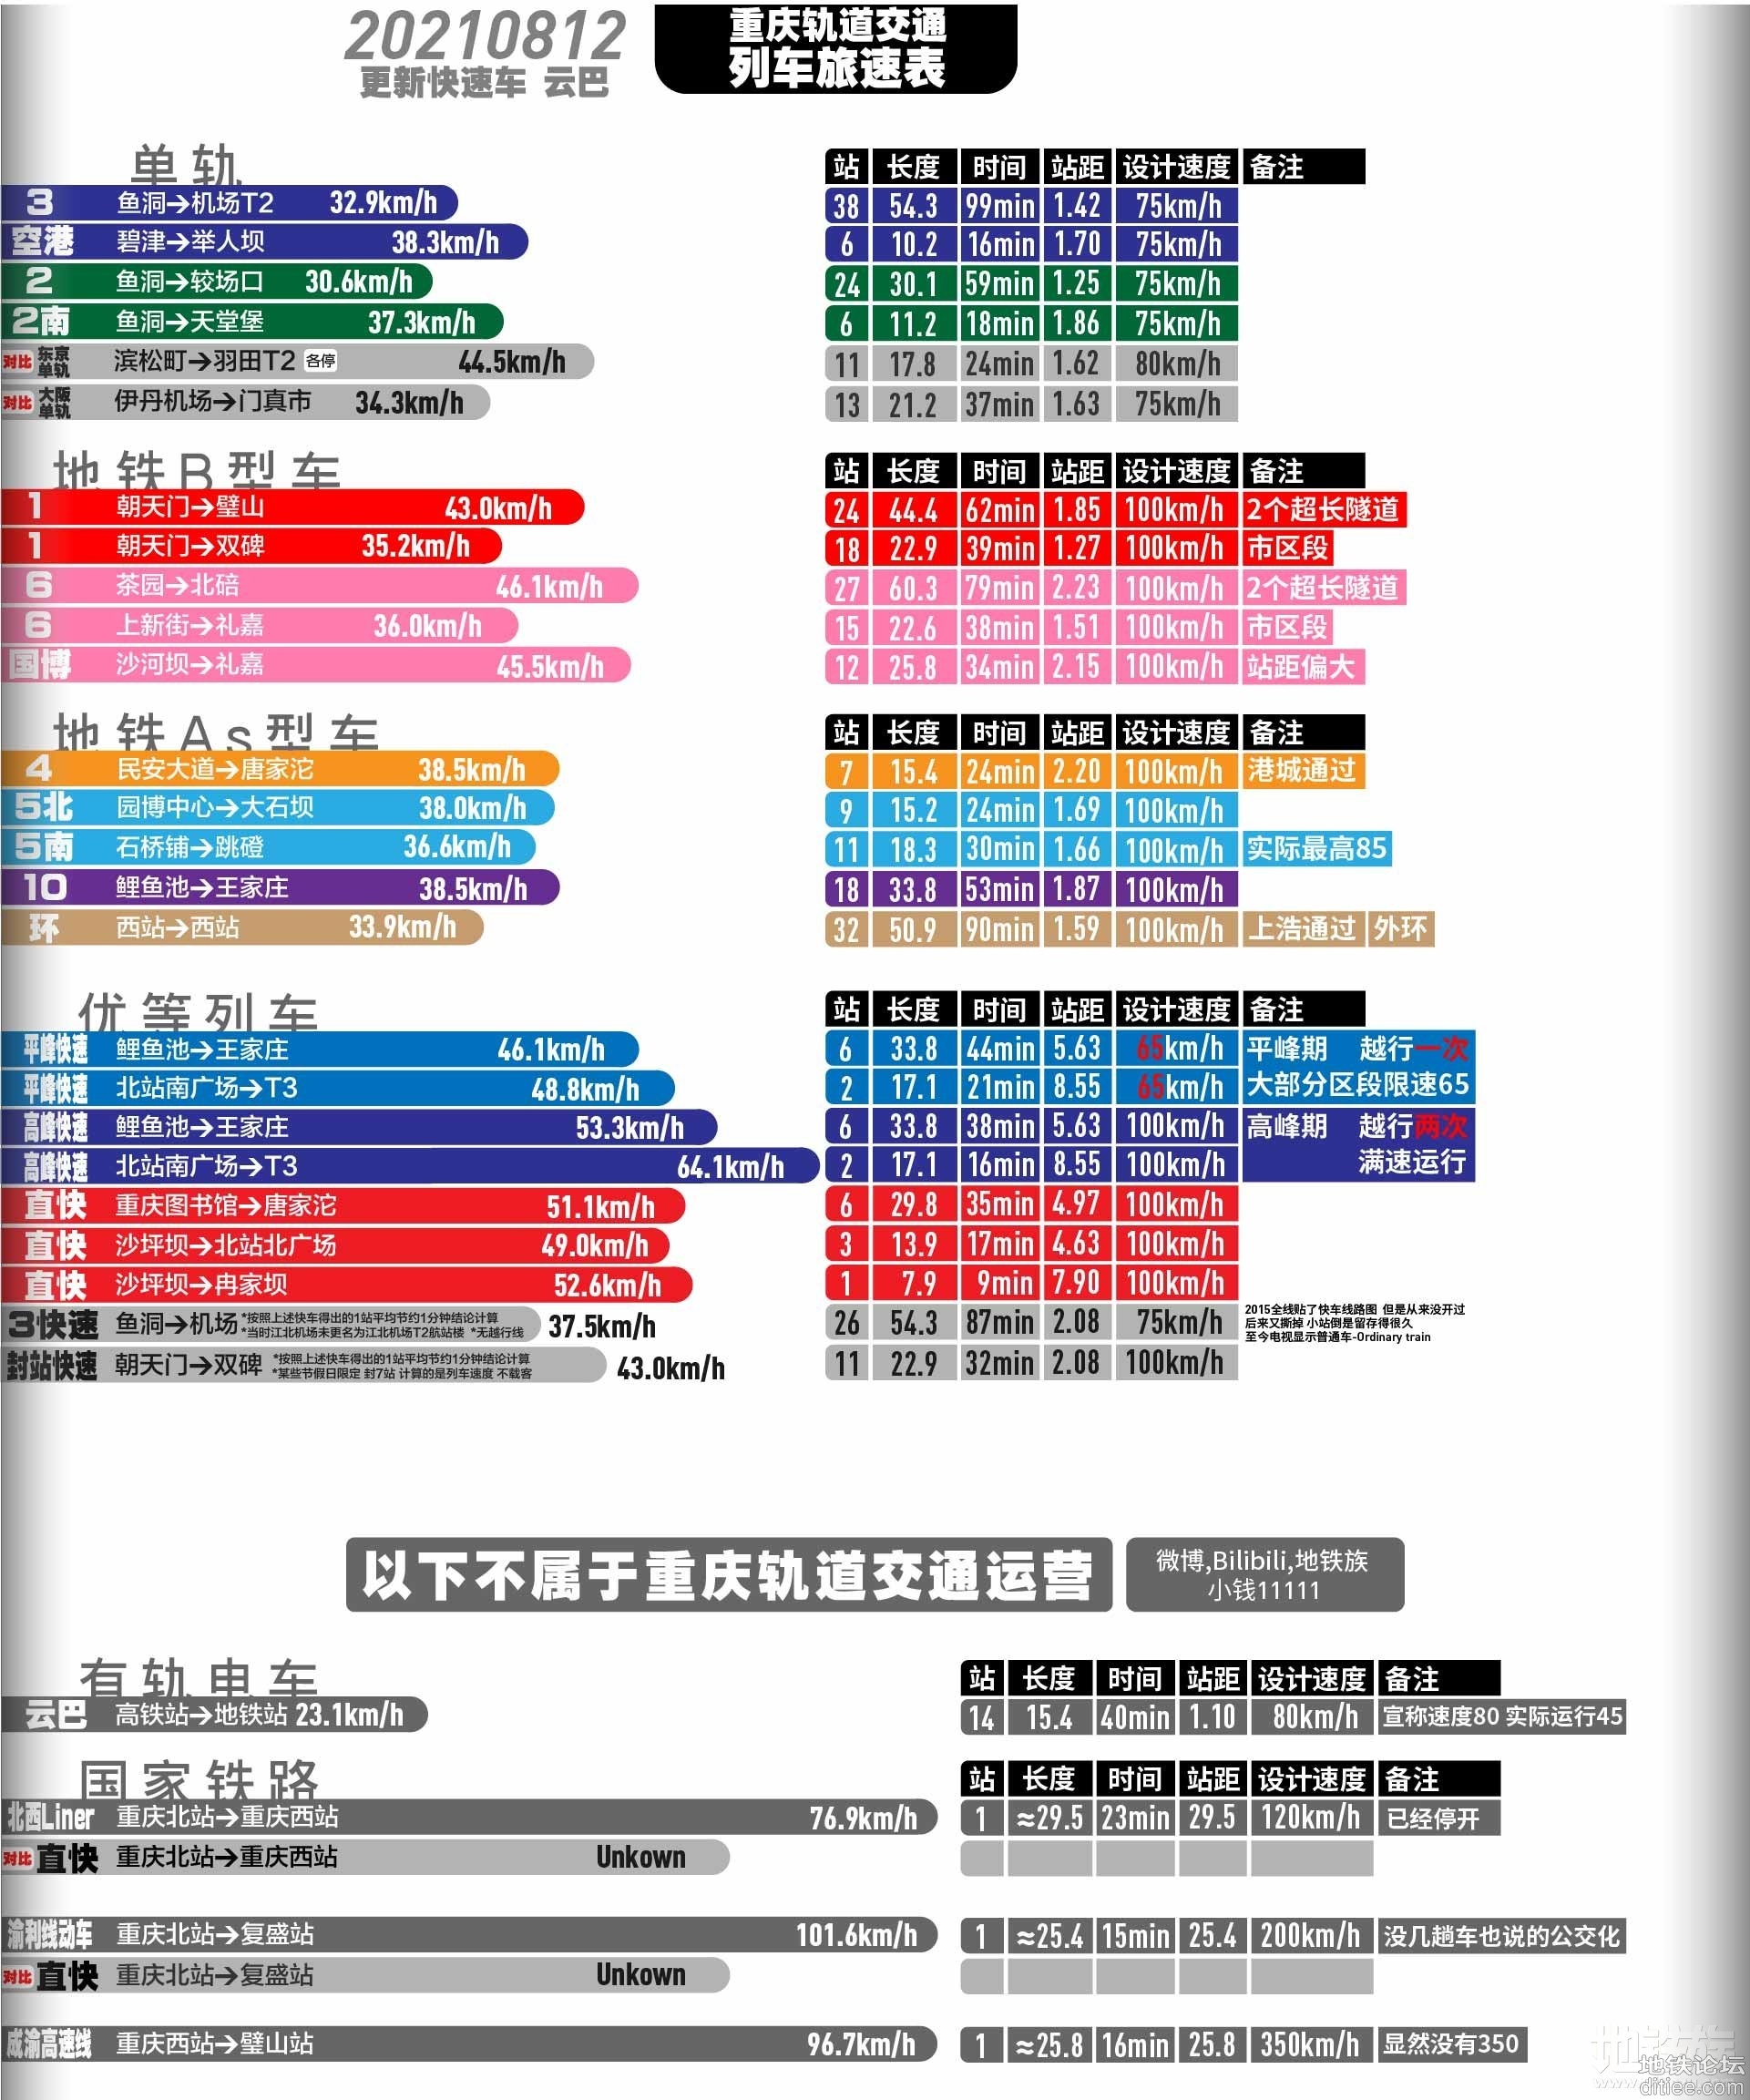 重庆地铁各线路旅速表 2021年8月12日